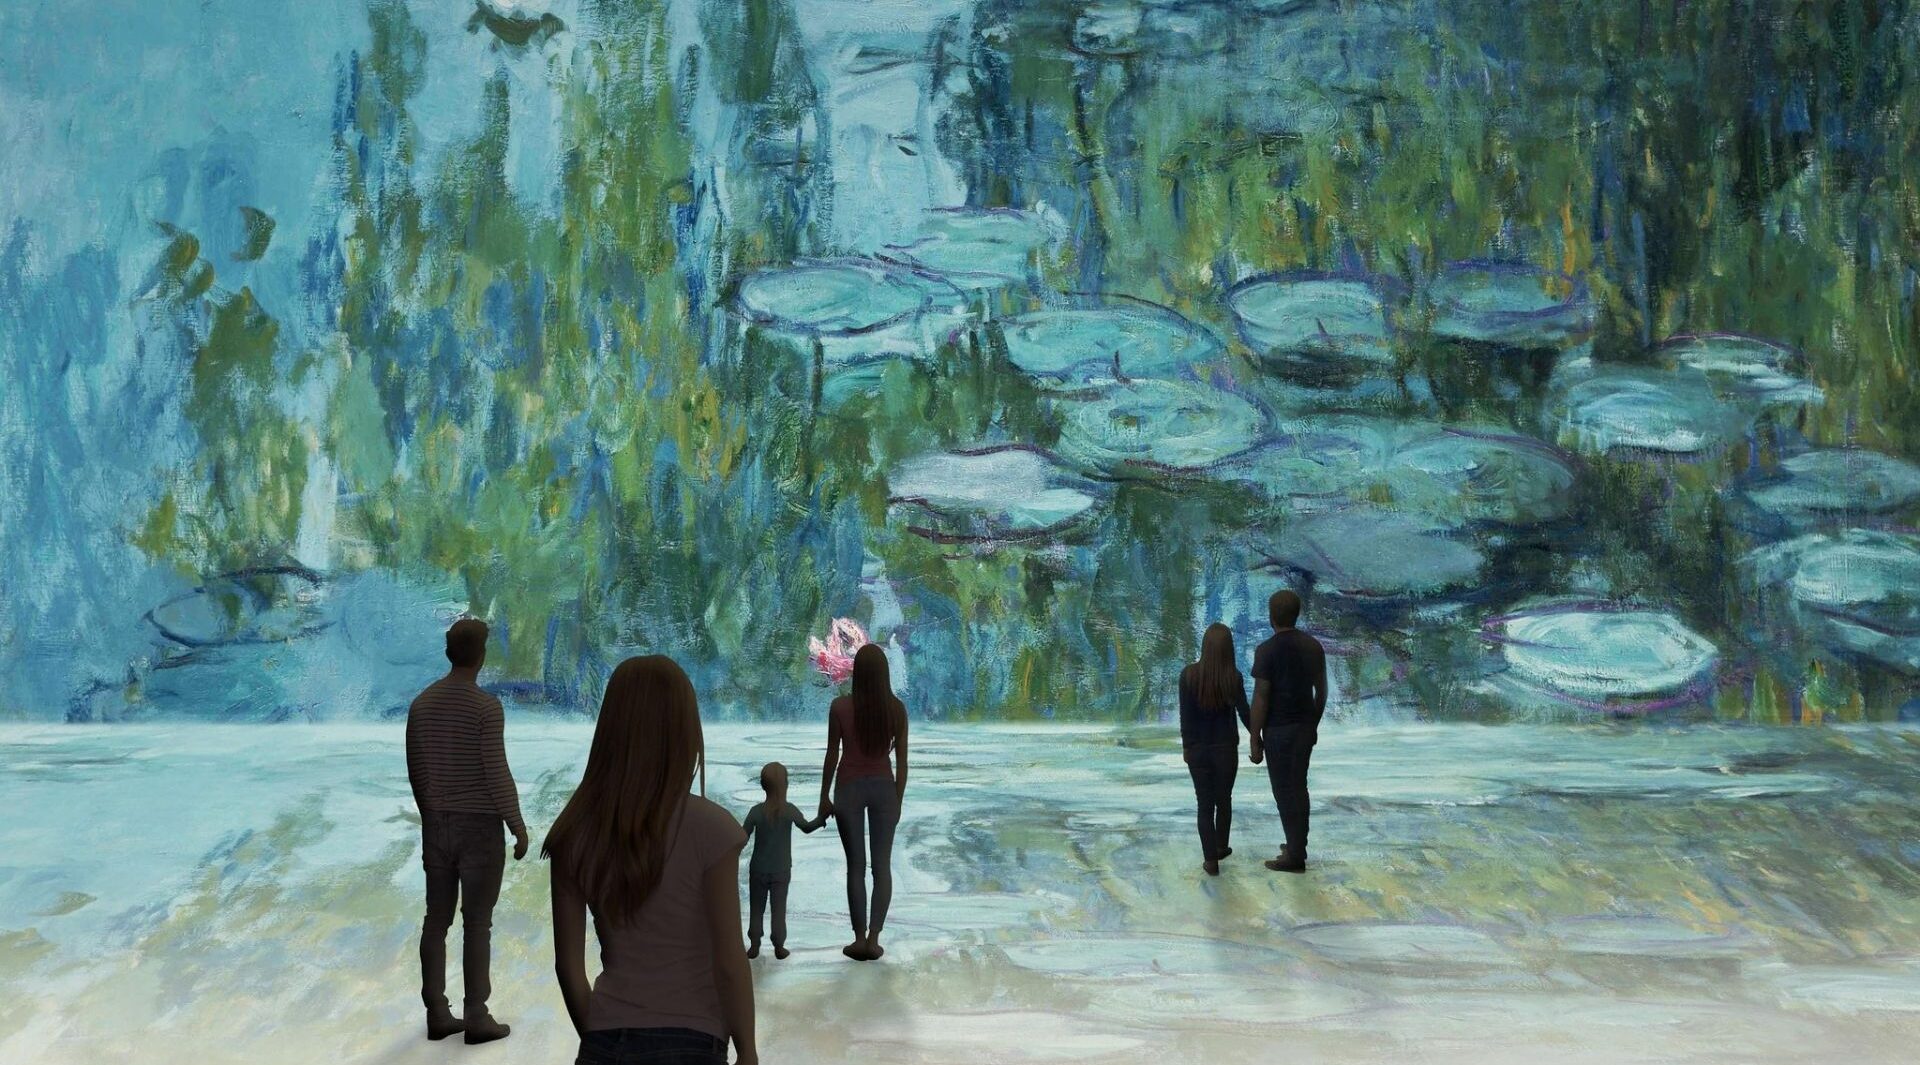 Mostra immersiva su Monet